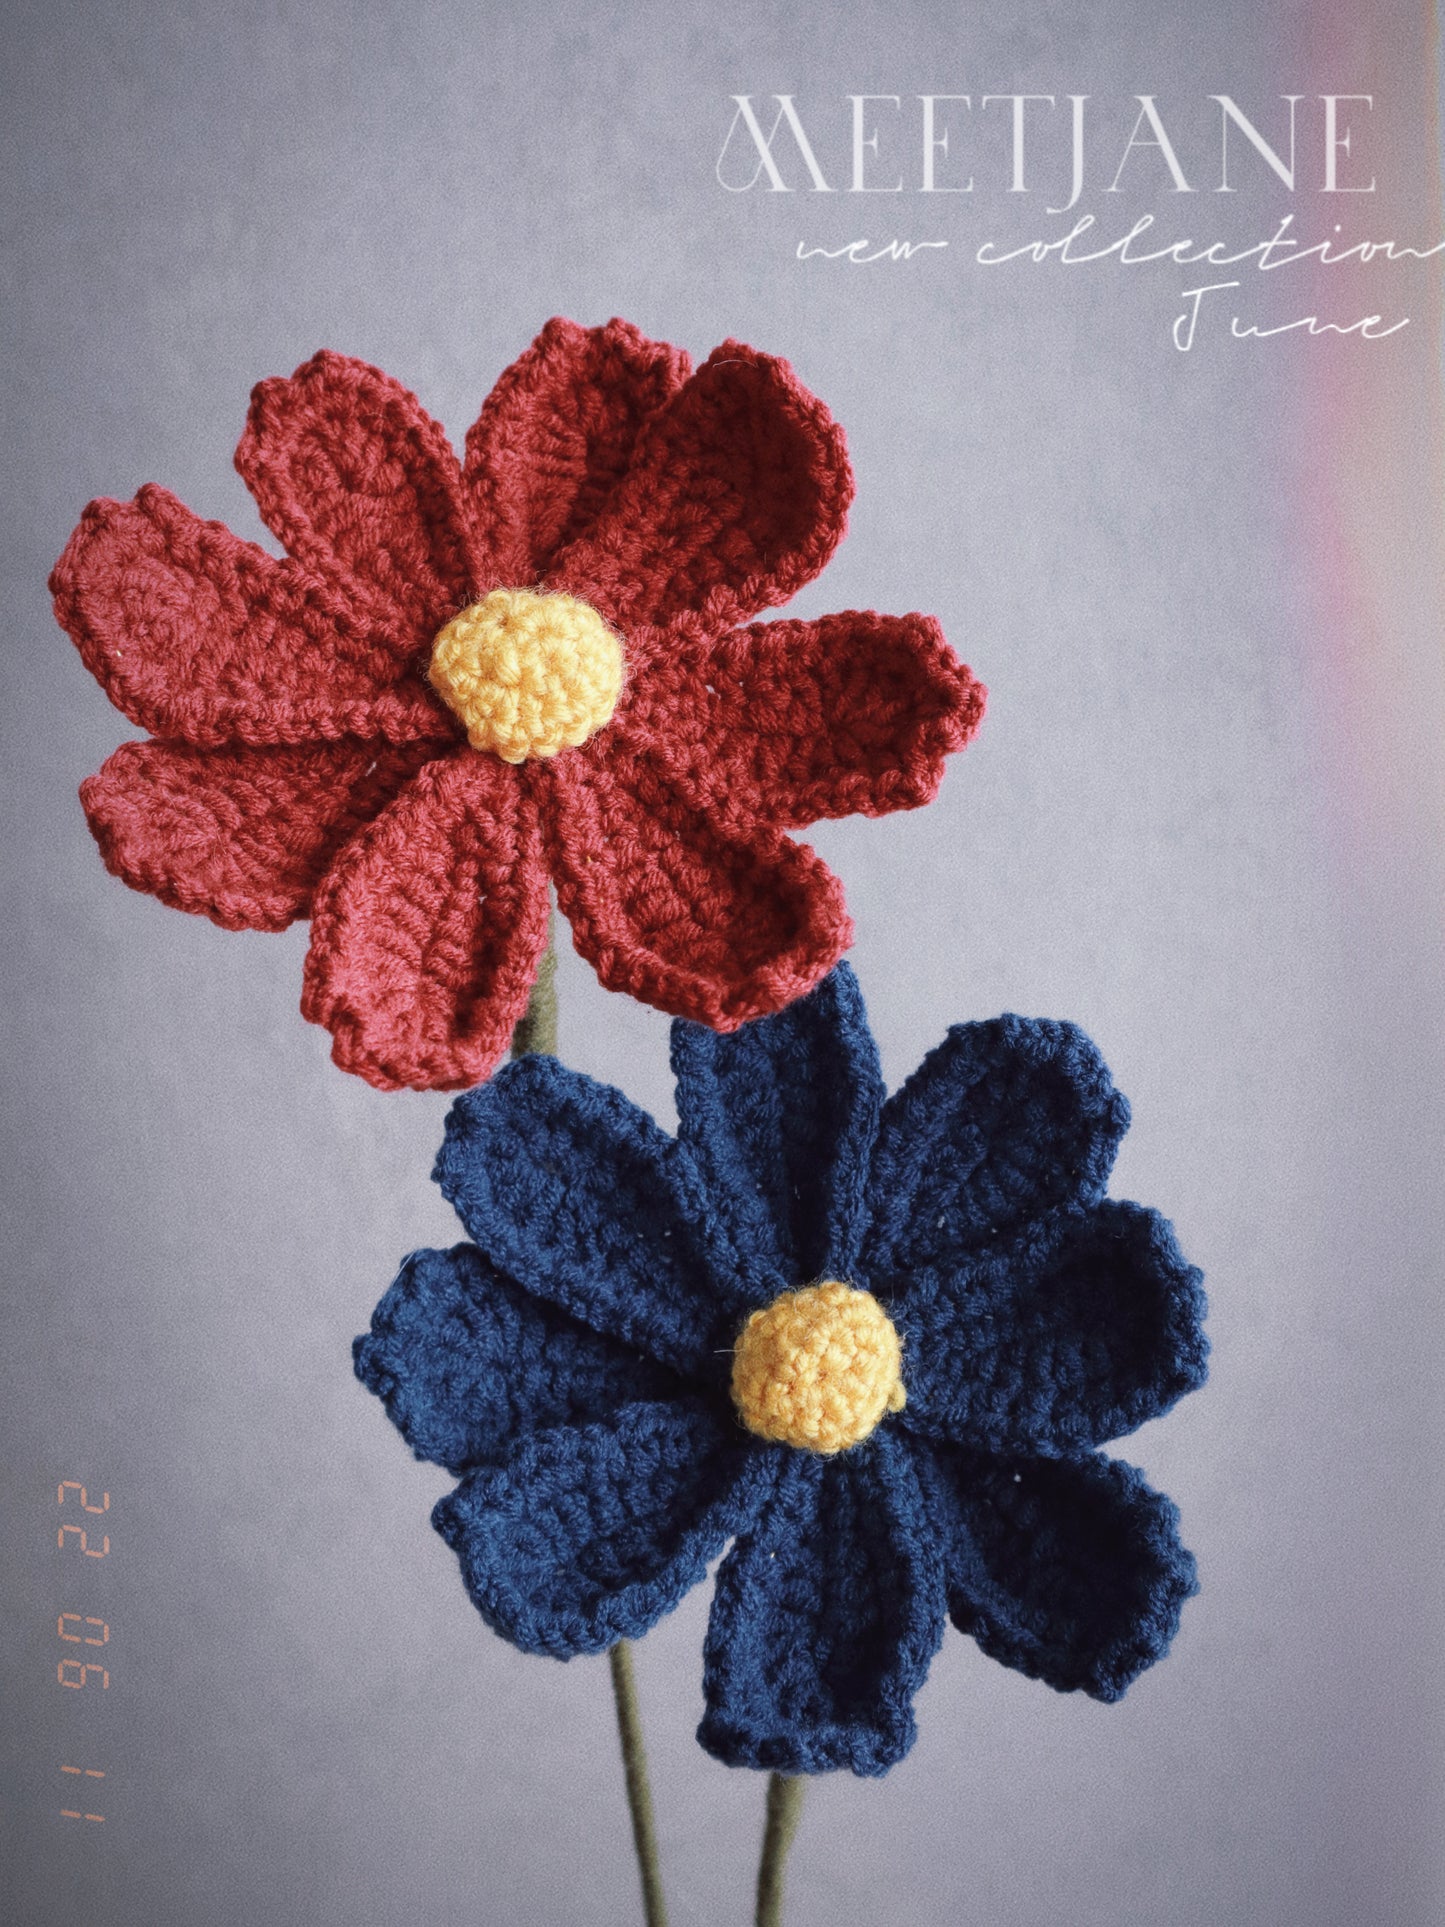 Meetjane bouquet|Melbourne handmade | Kelsang flower